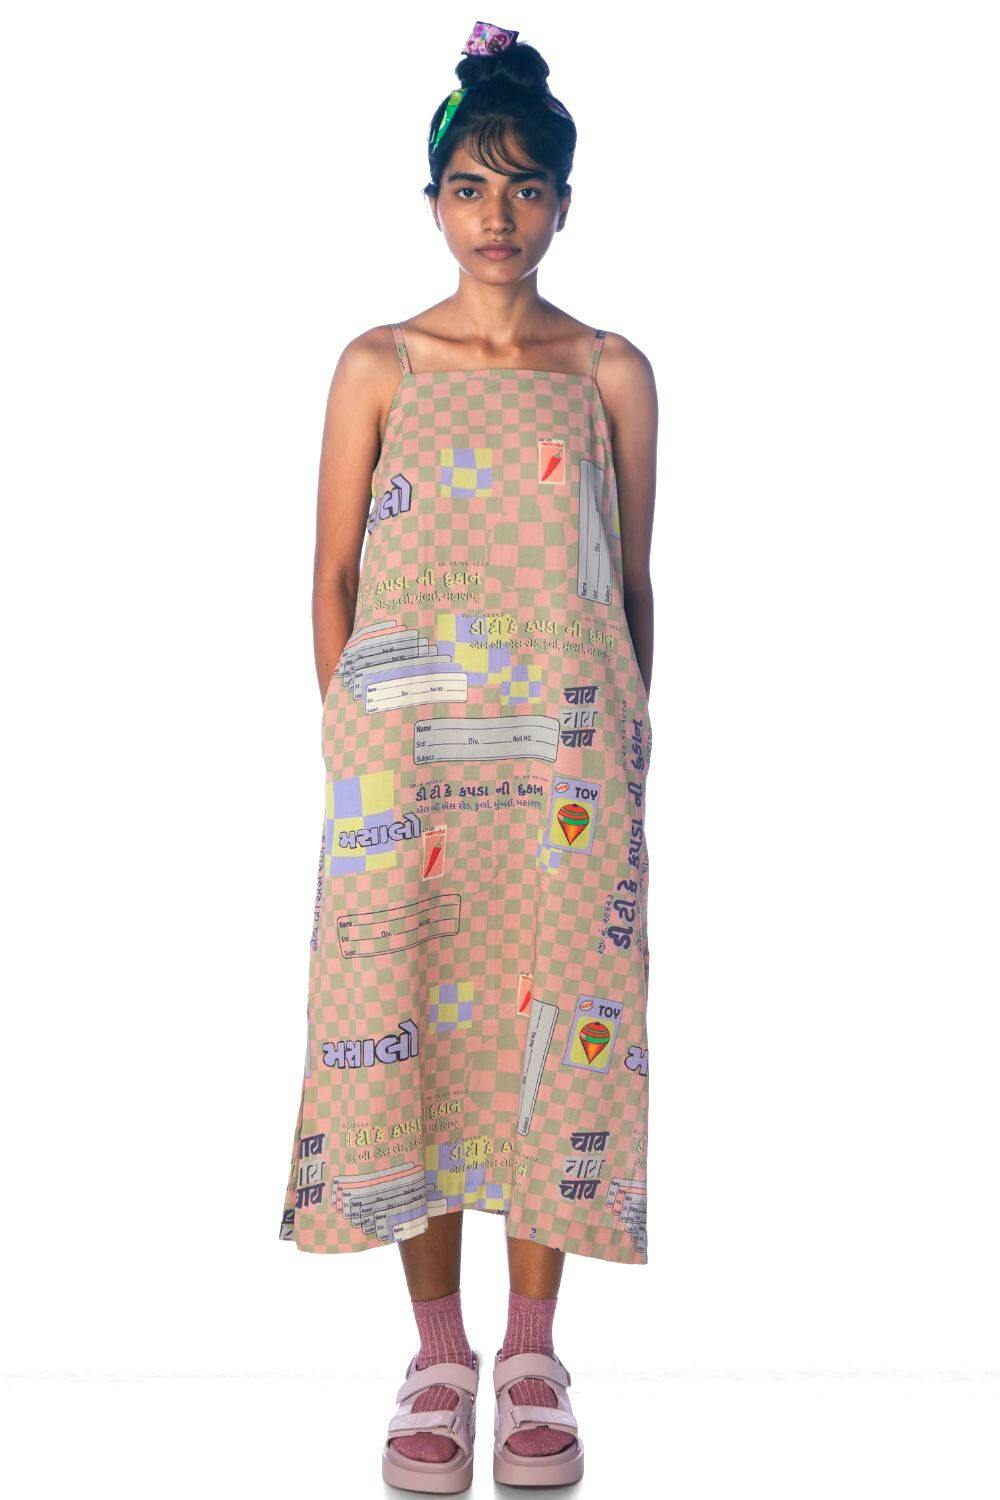 MIRCH MASALA SLIP DRESS, a product by Doh tak keh